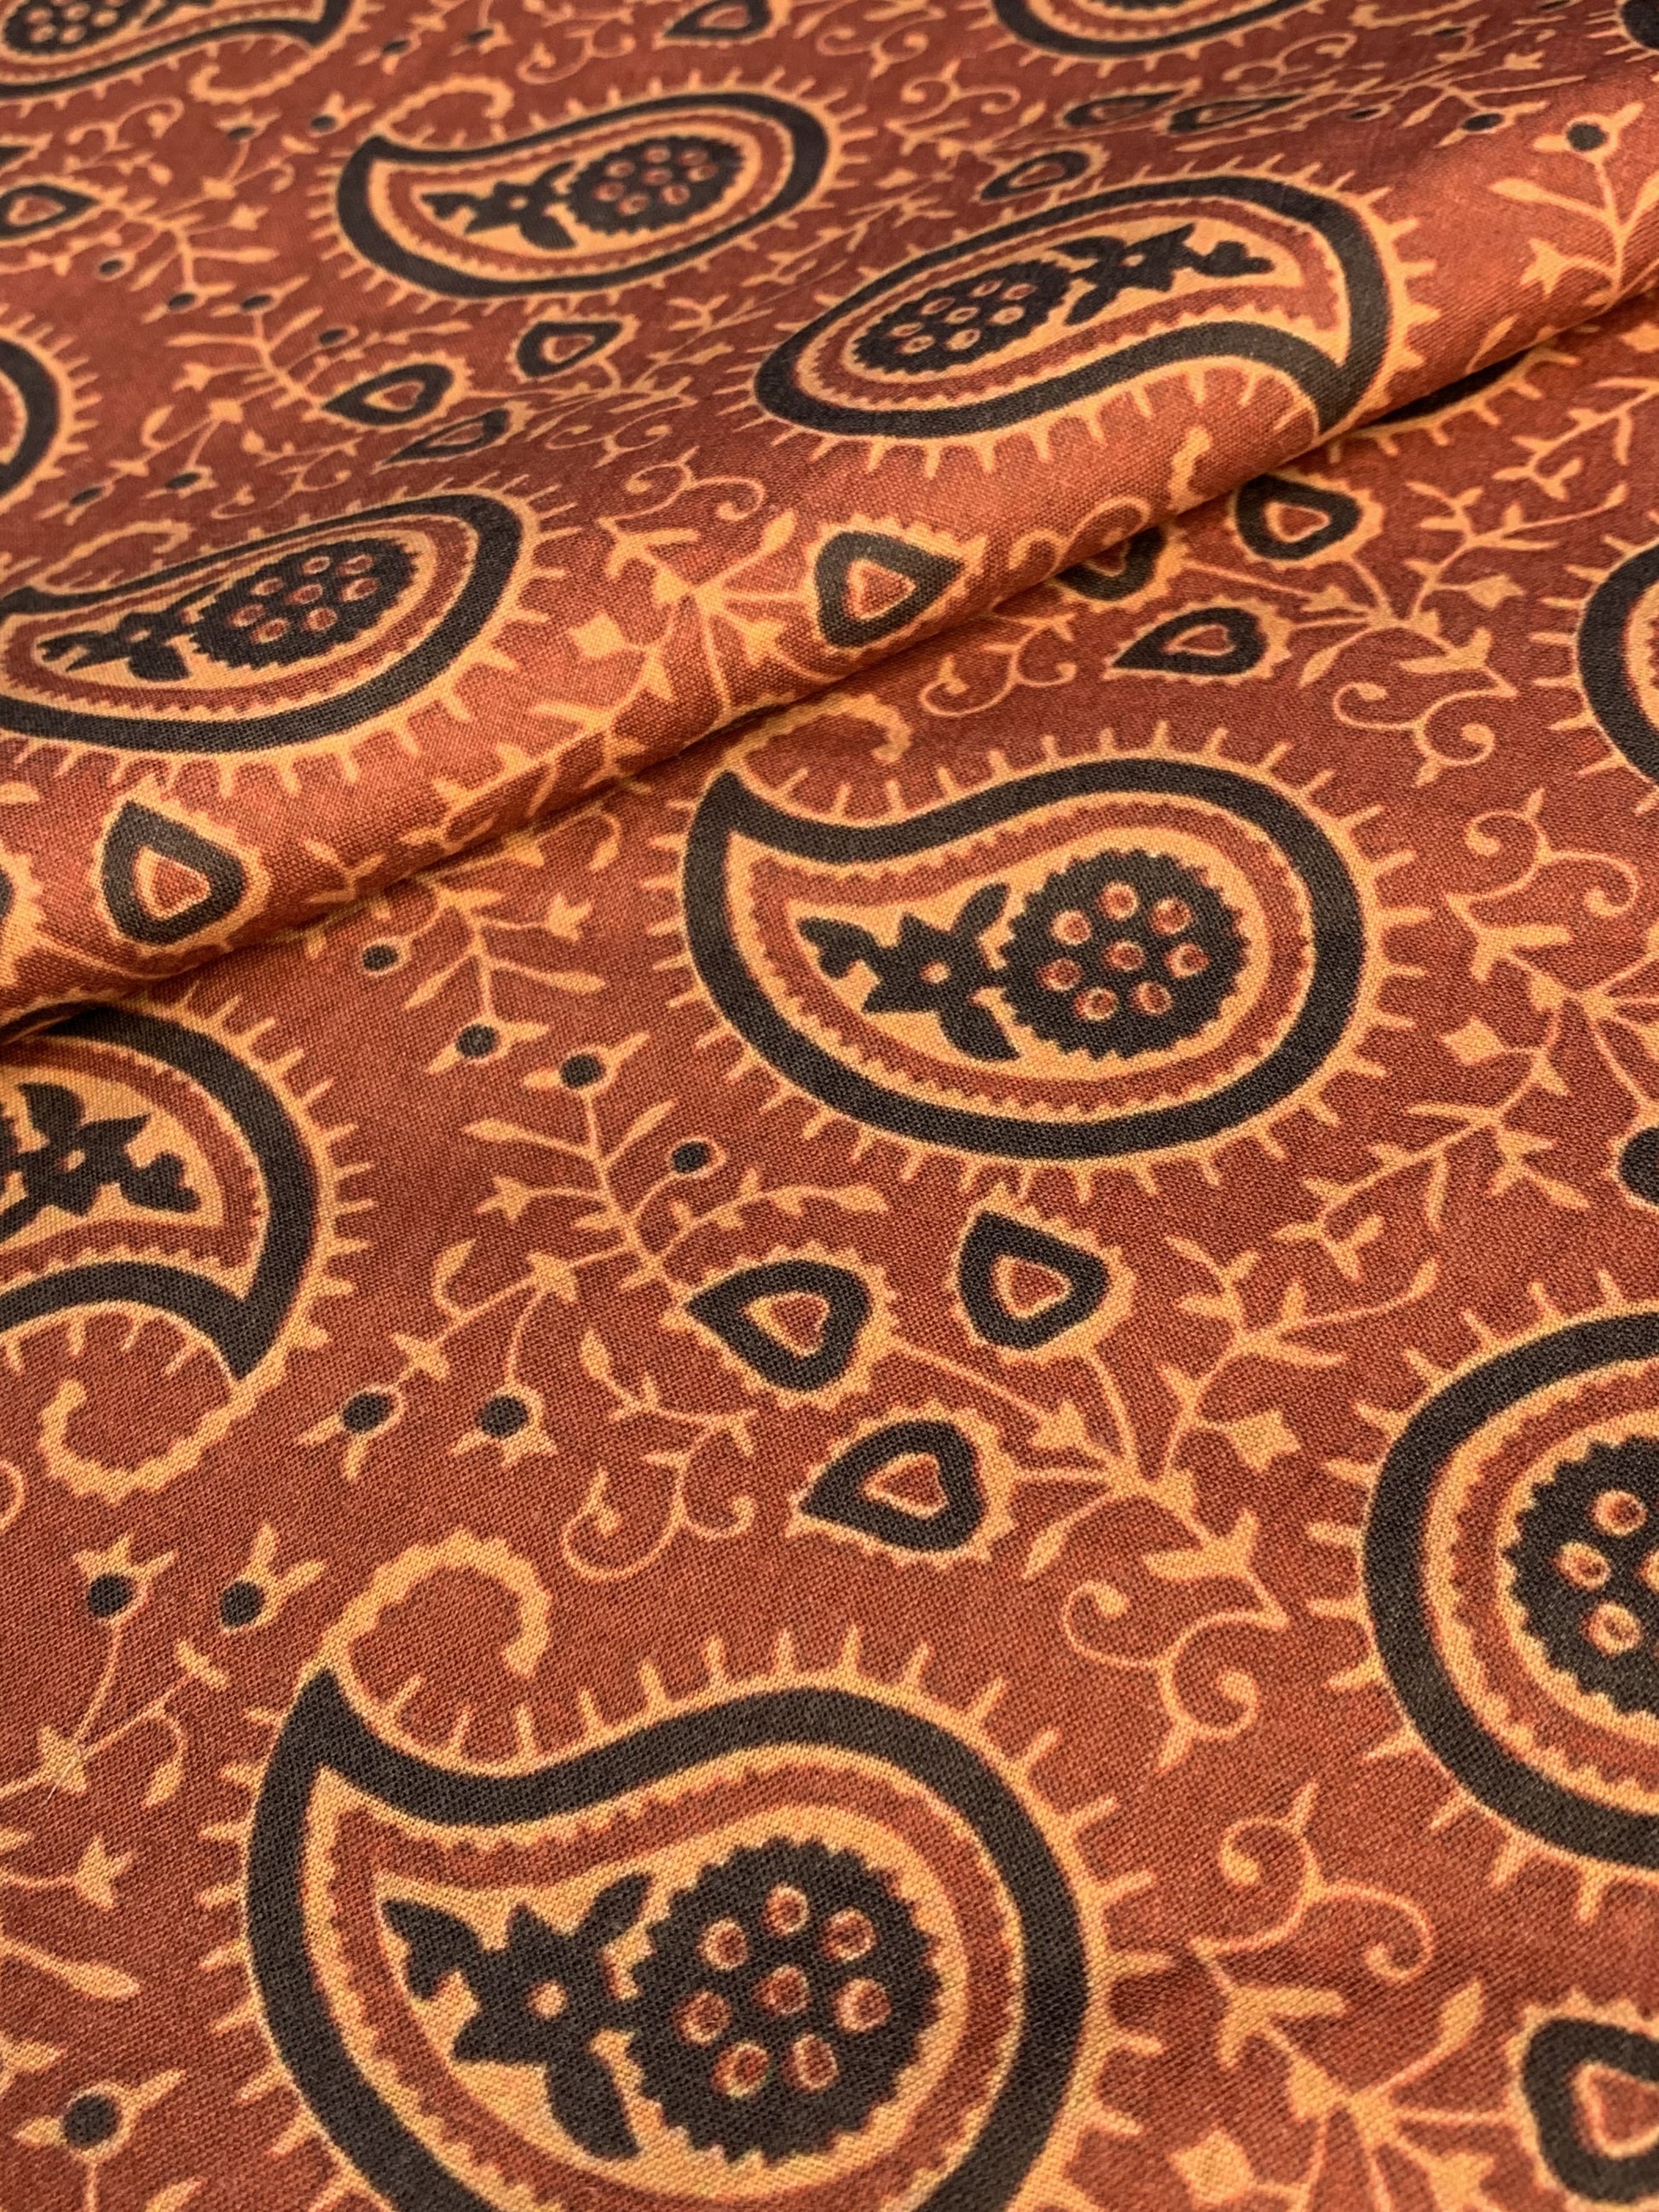 Premium Dark Orange Handblock Print Cotton Fabric